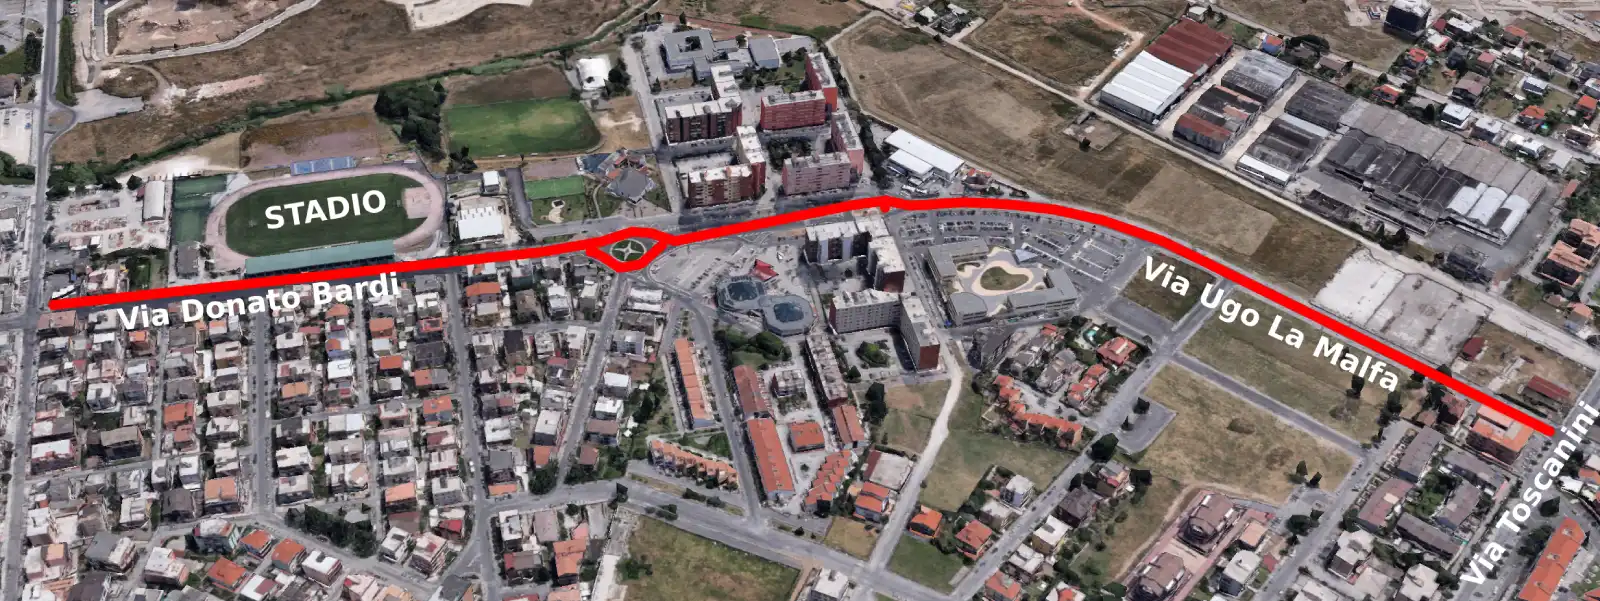 Aprilia zona mercato settimanale indicata dalla linea rossa (elaborazione su immagine Google map 3d con ausilio AI)